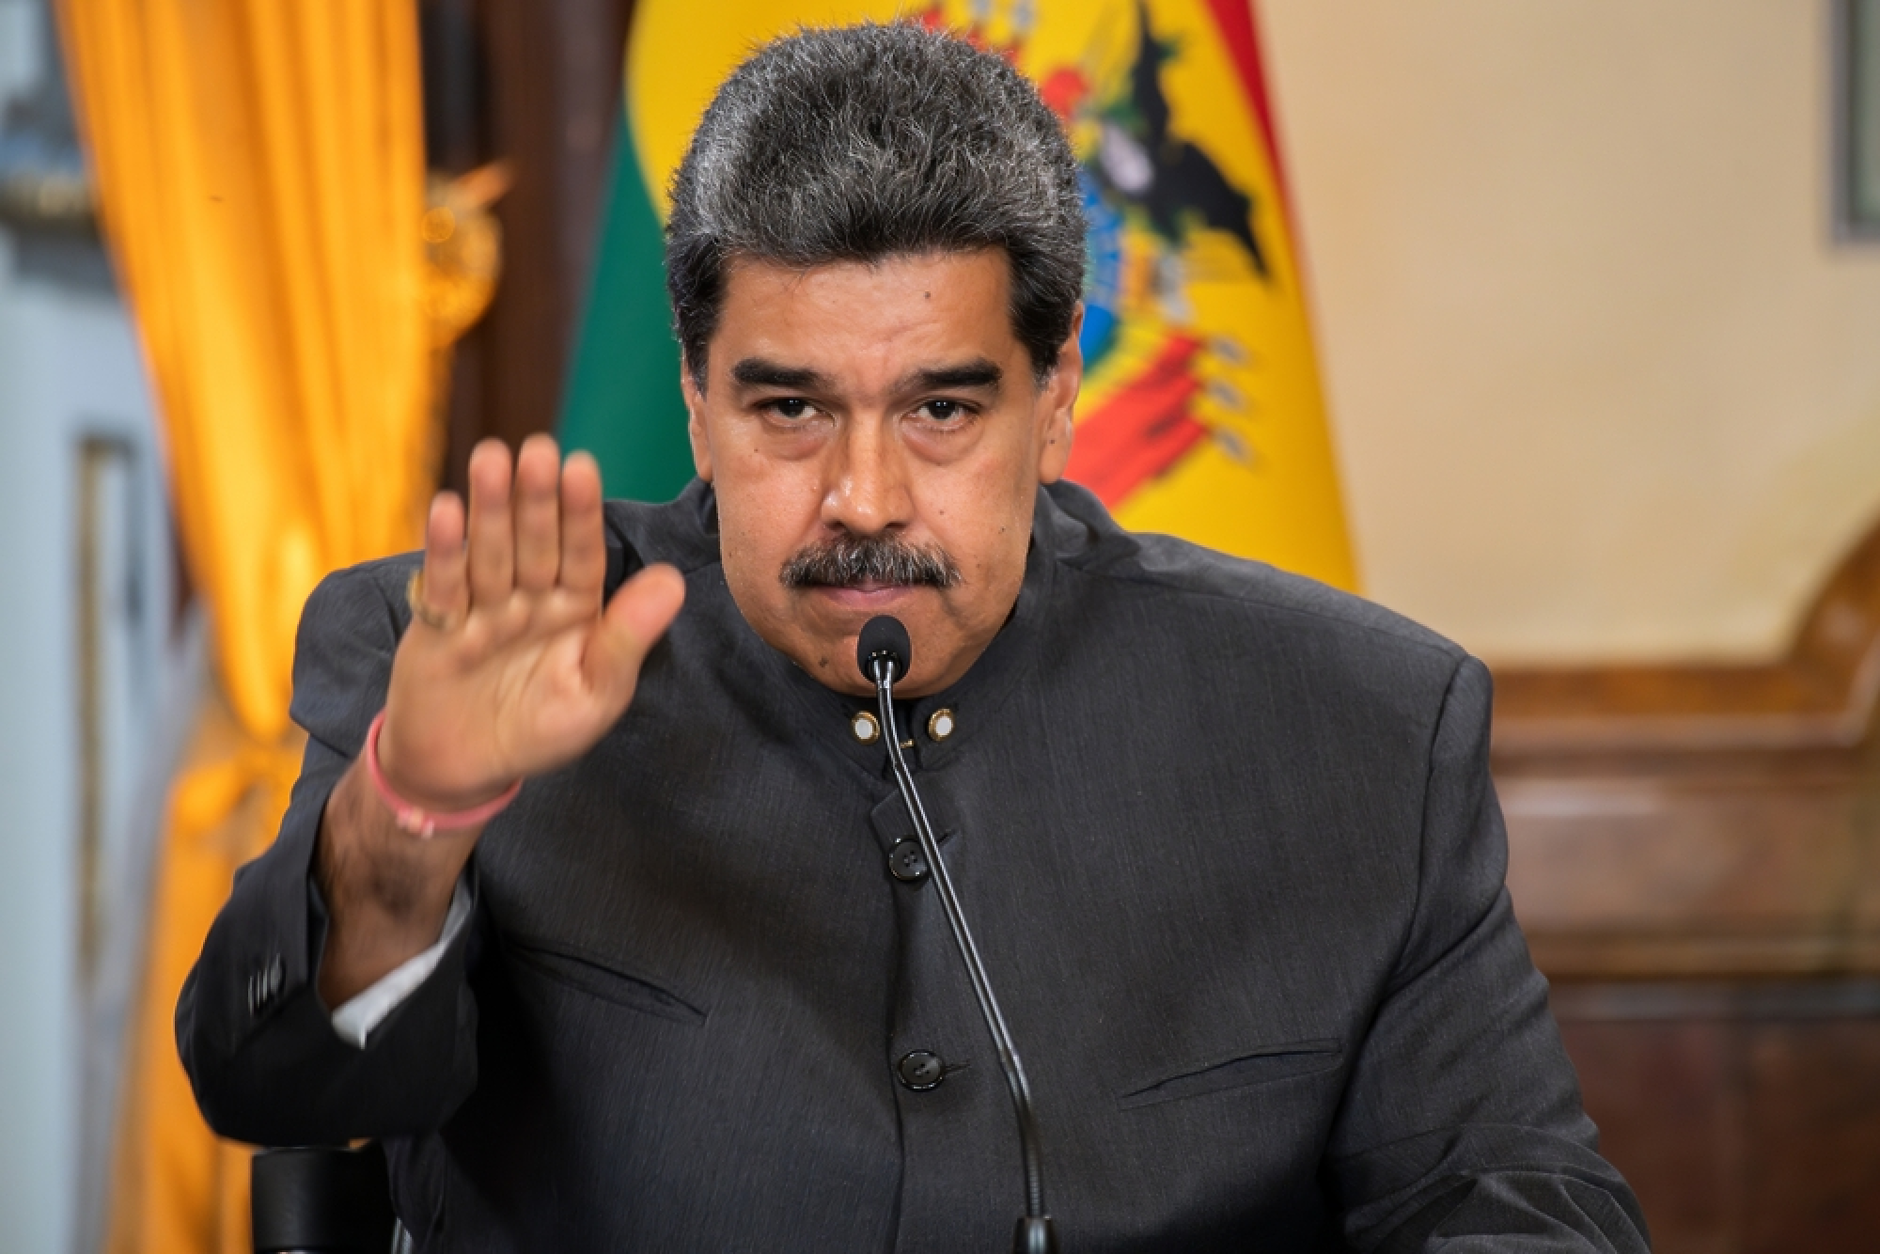  Девет държави поискаха извънредно заседание на ОАД заради изборите във Венецуела